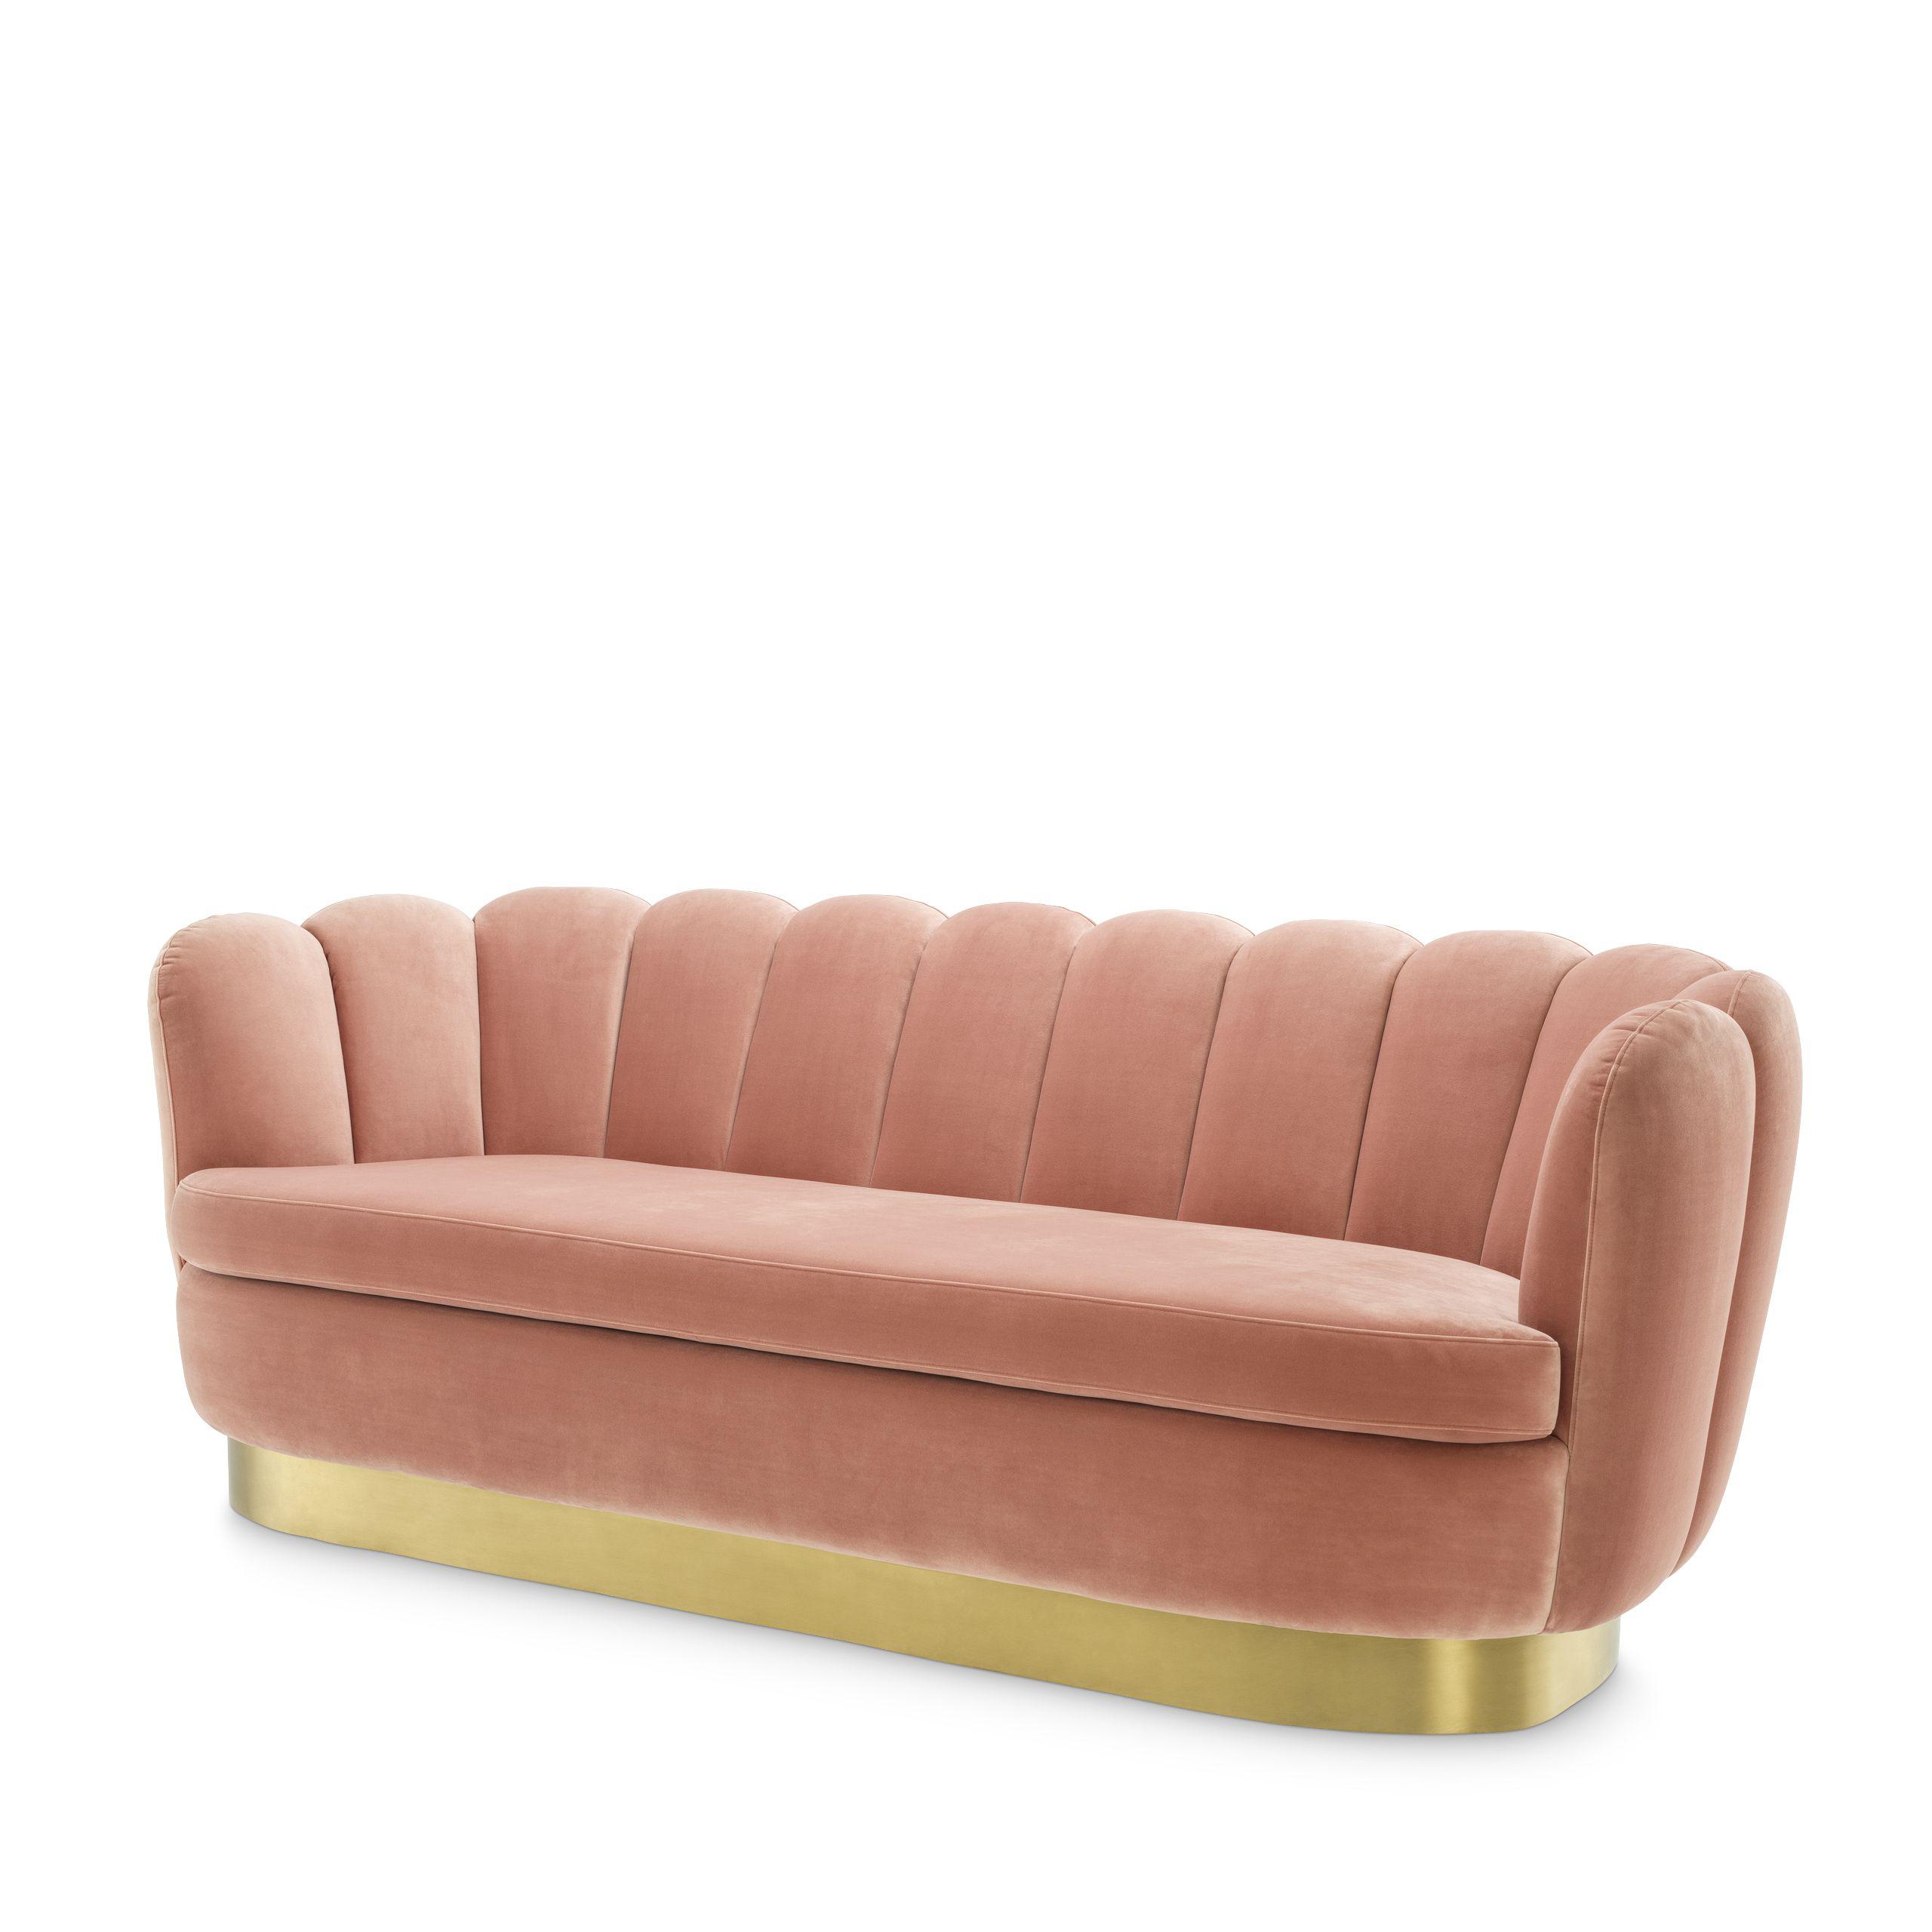 Купить Прямой диван Sofa Mirage в интернет-магазине roooms.ru